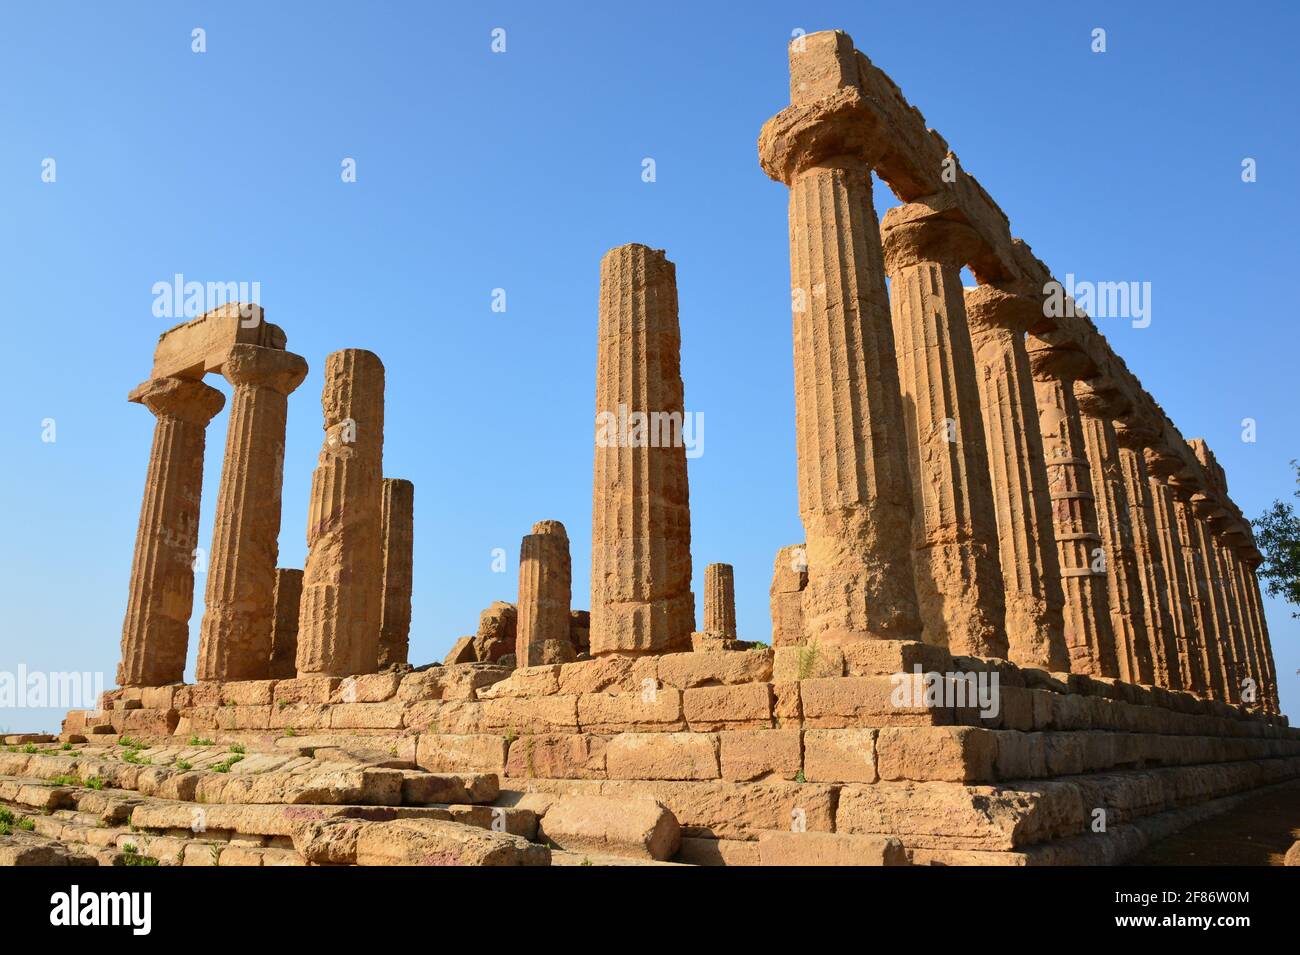 Italia, Sicilia, Agrigente, il tempio Hera nella valle dei templi, è un tempio dorico costruito intorno agli anni '450, il è classificato patrimonio mondiale dell'UNESCO. Foto Stock